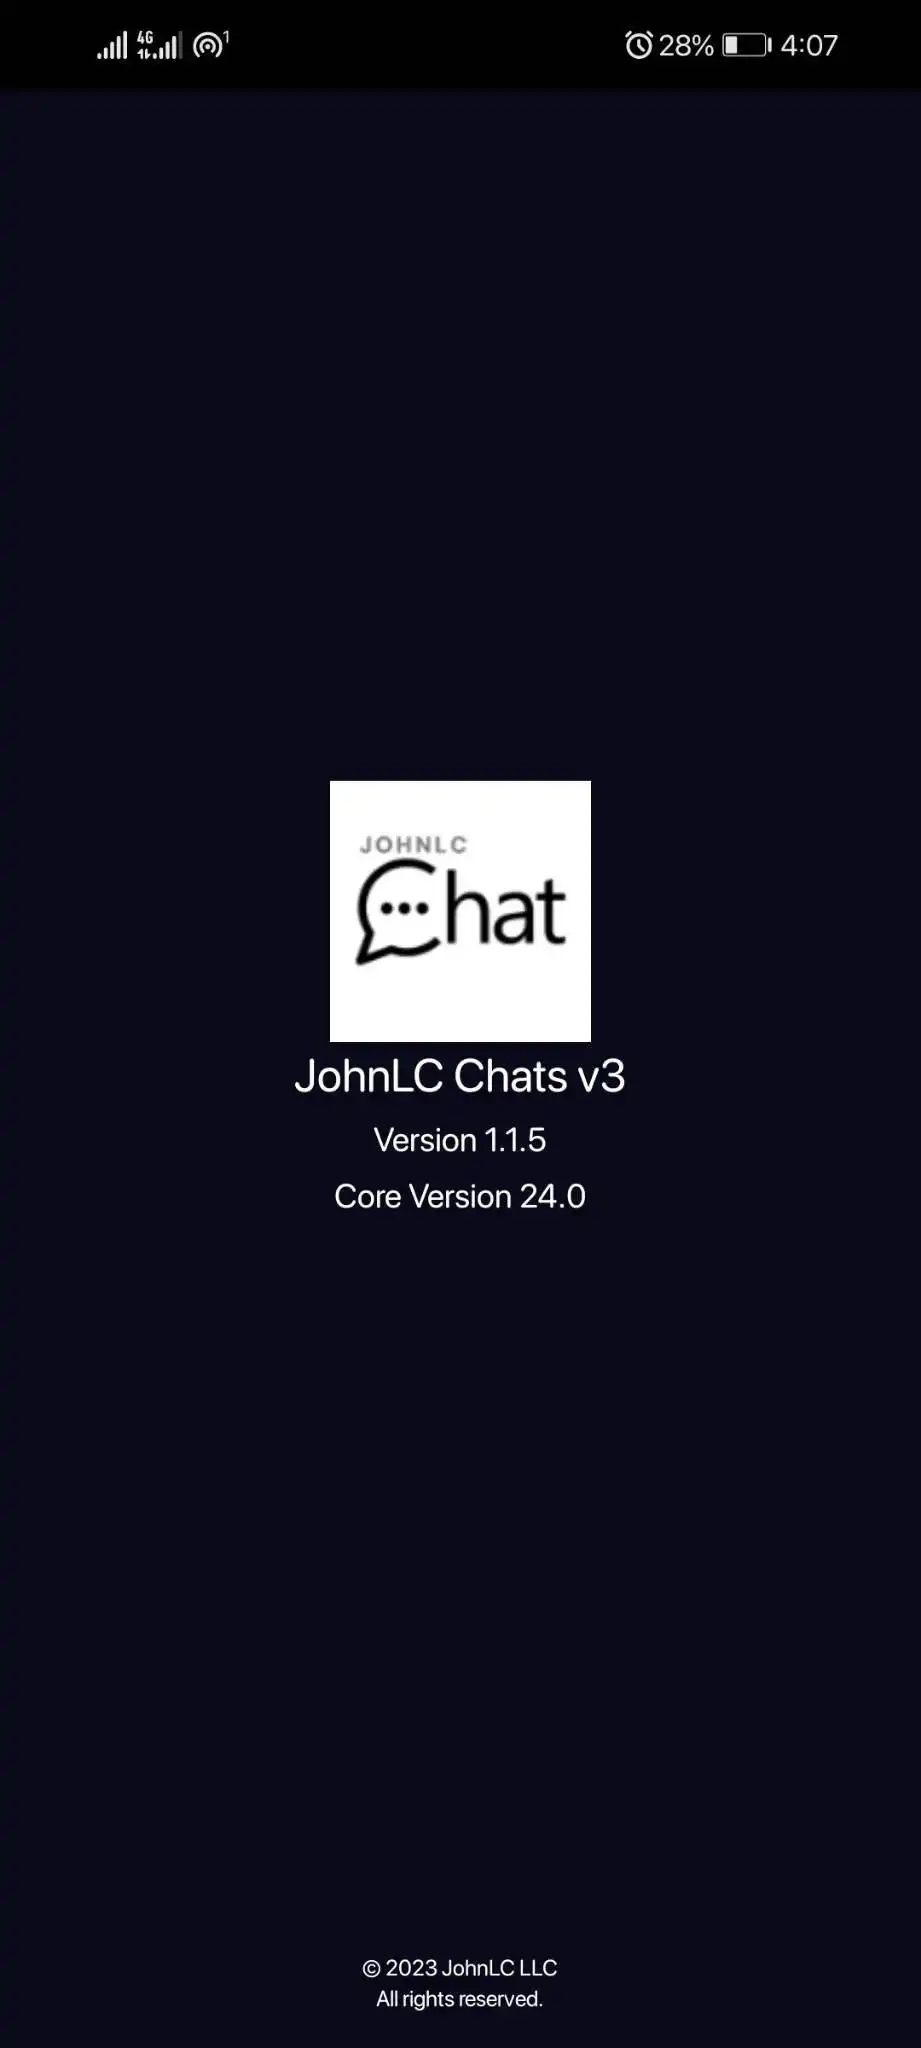 Laden Sie das Web-Tool oder die Web-App JohnLC Chats v3 herunter